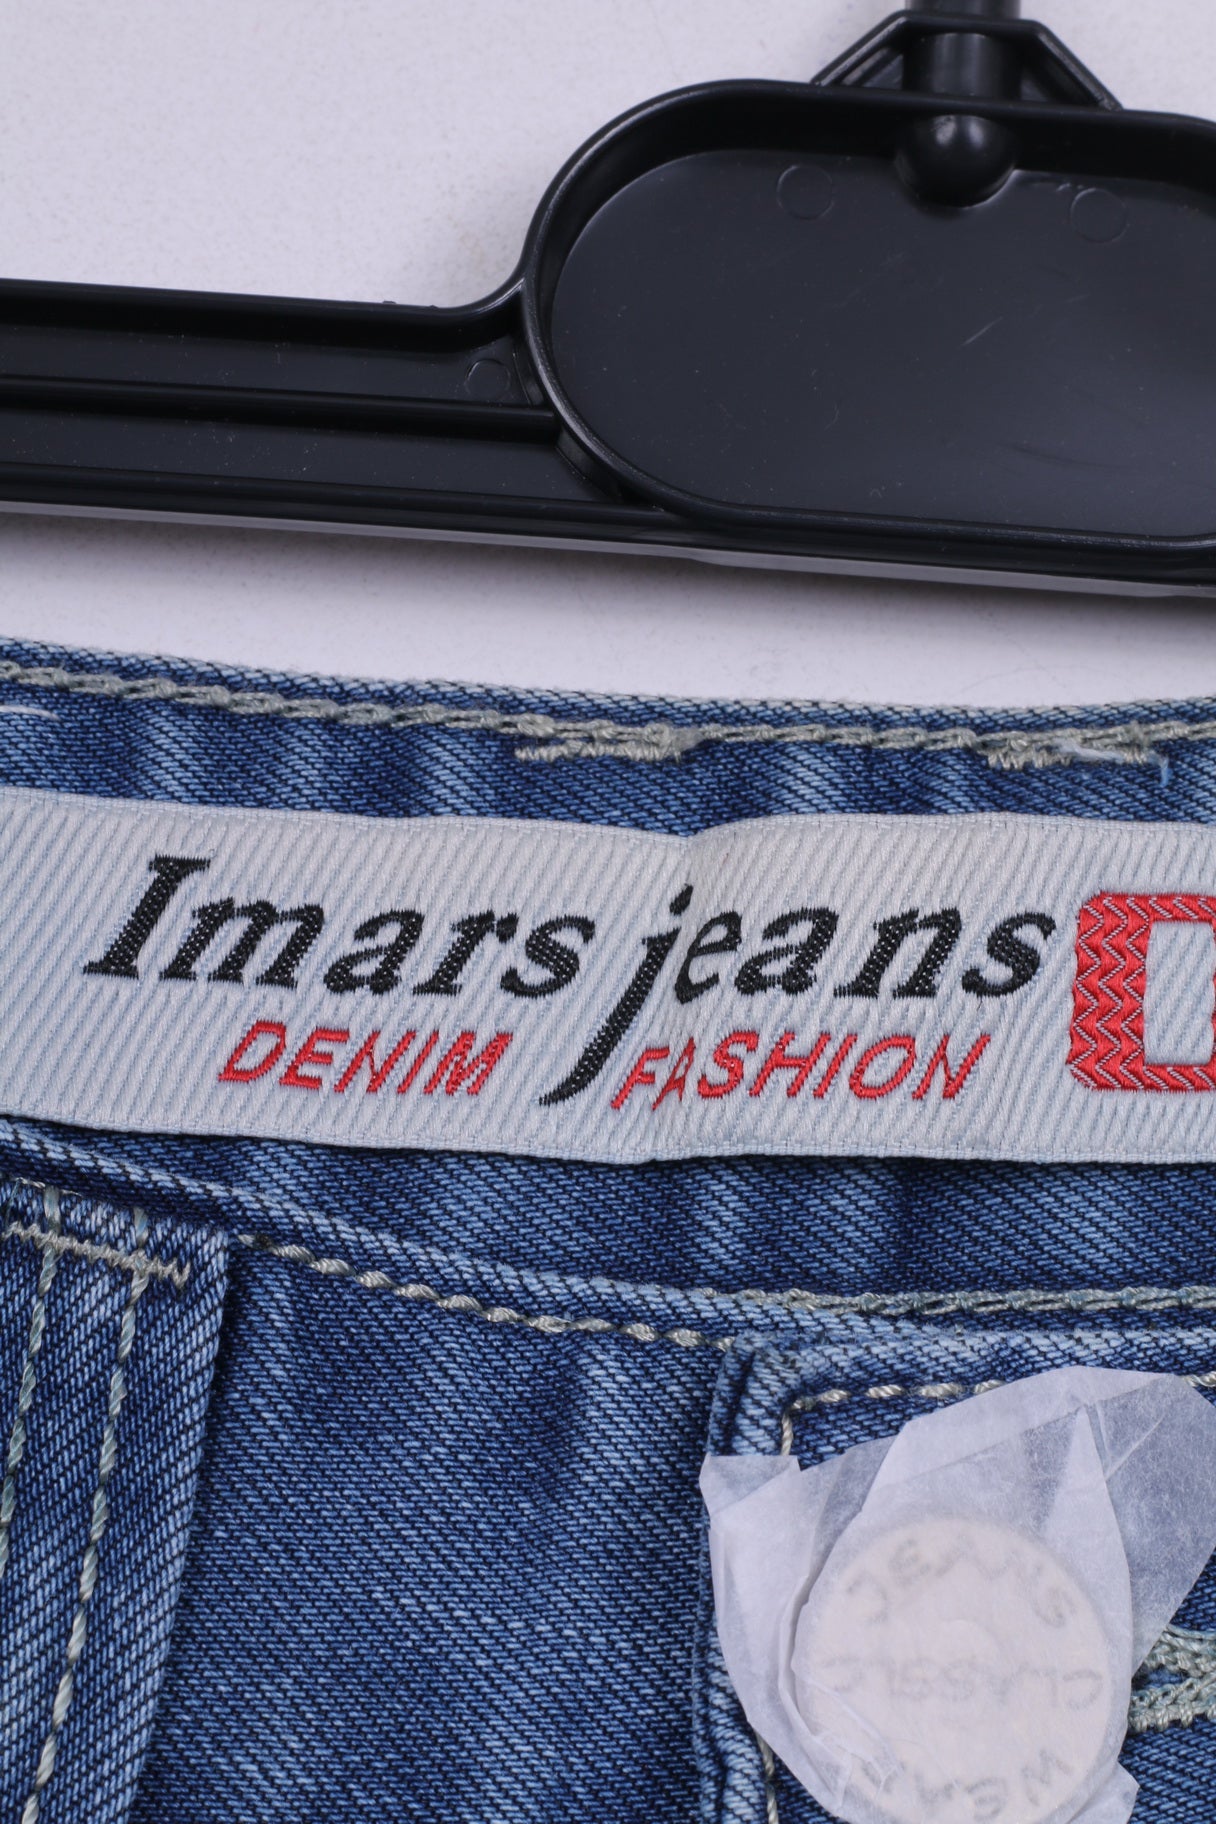 Nuovi Pantaloni Imars Jeans Denim Moda Donna 29 Jeans Cotone Blu